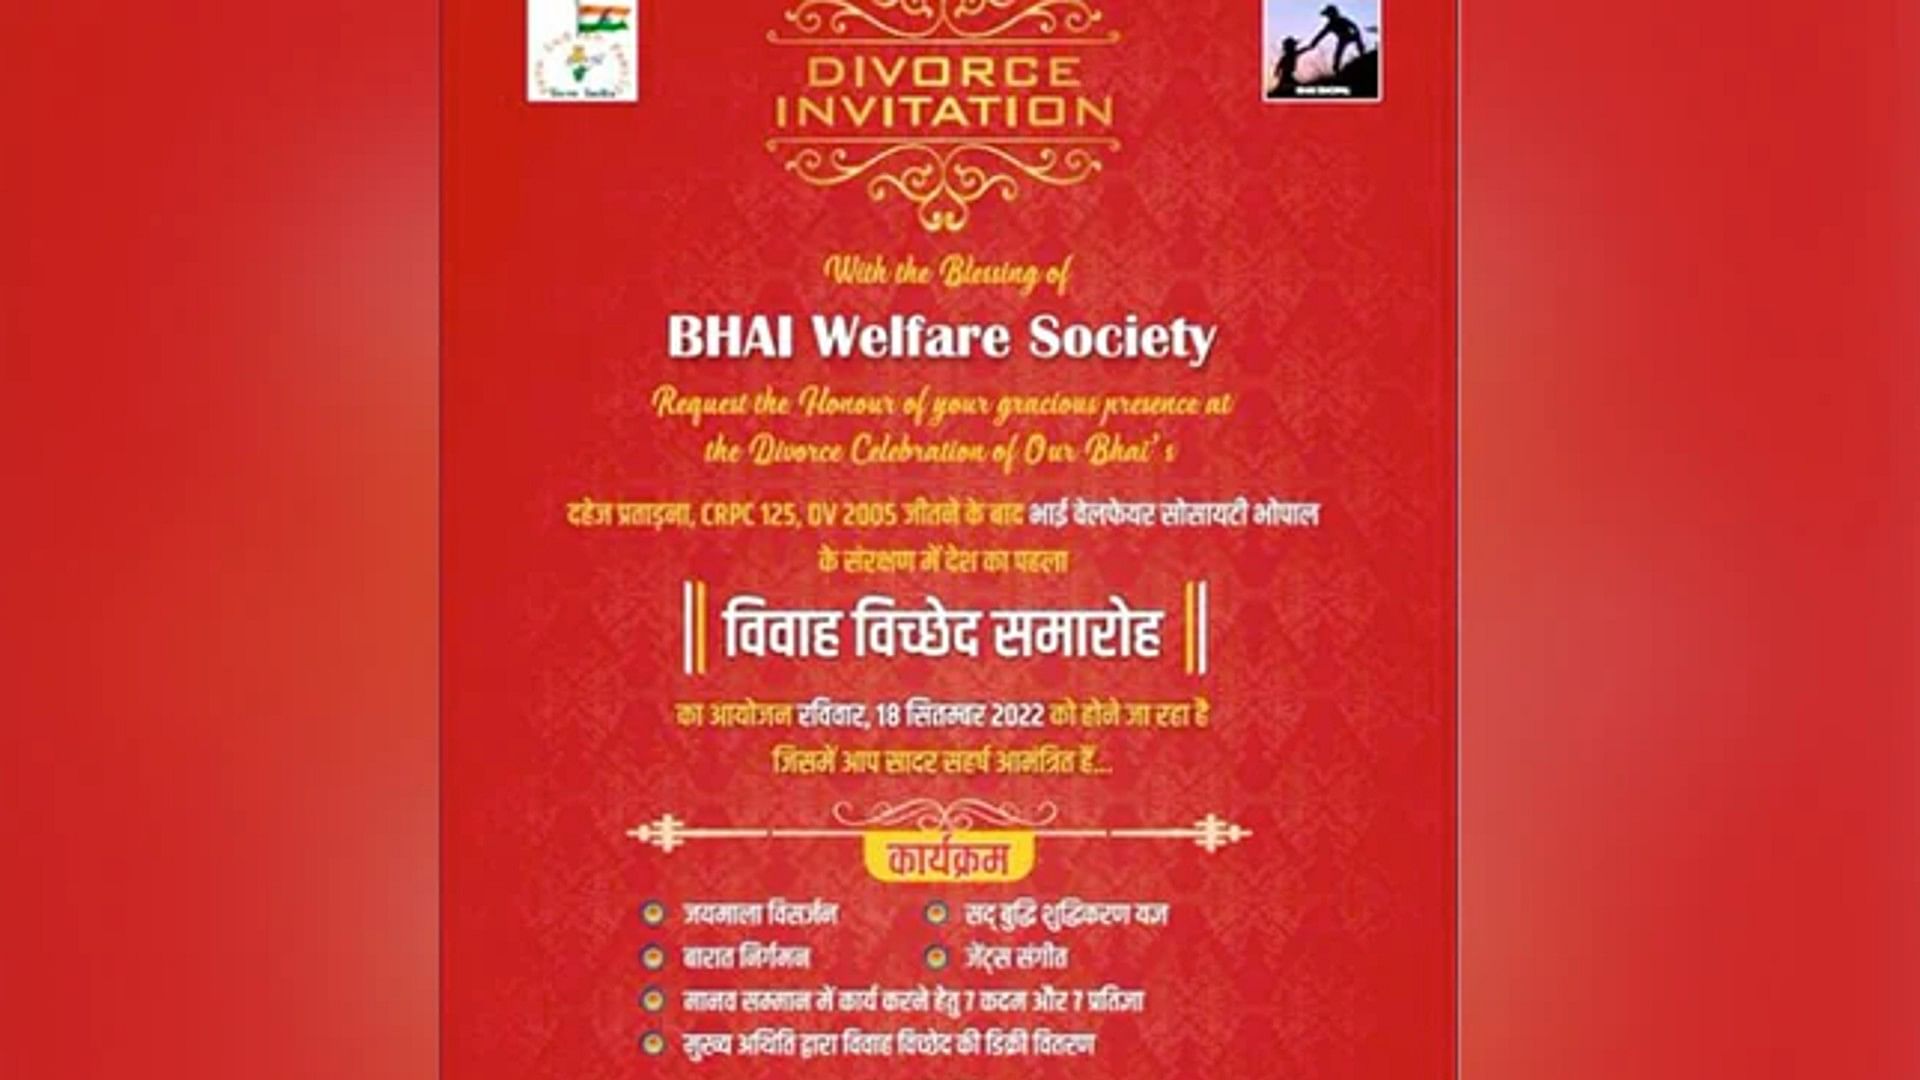 Divorce Invitation Card: Divorce celebration in bhopal canceled after the card went viral